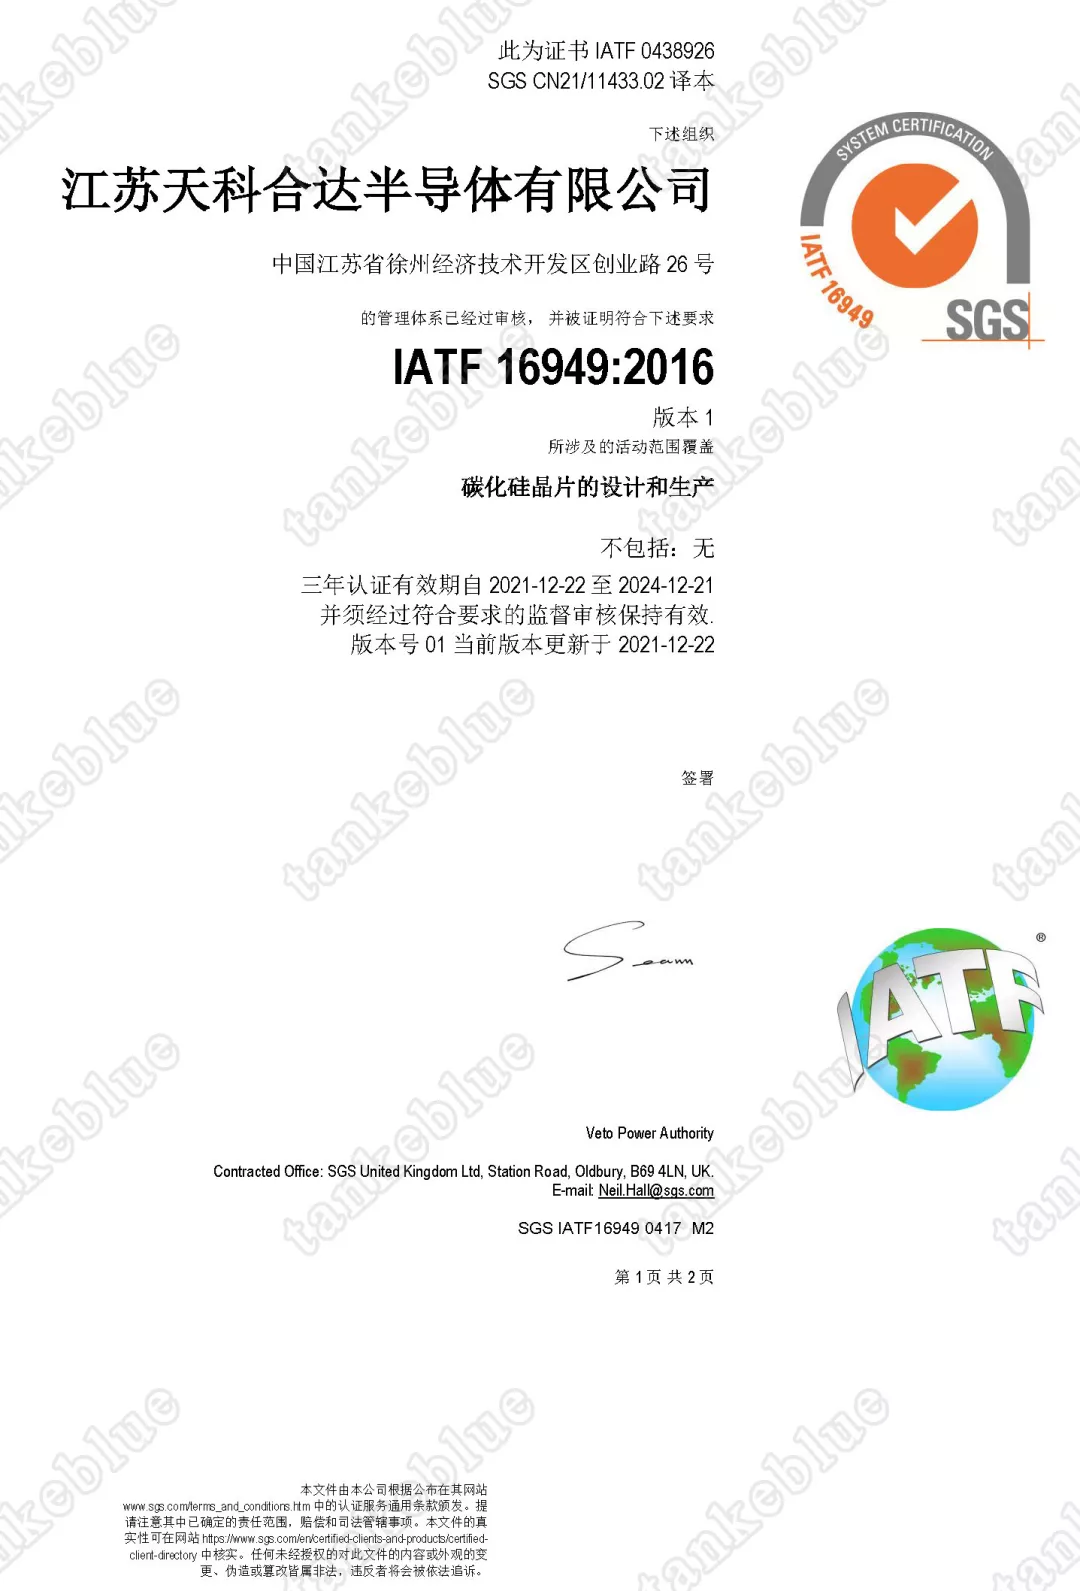 「成员风采」天科合达顺利通过IATF16949质量管理体系认证